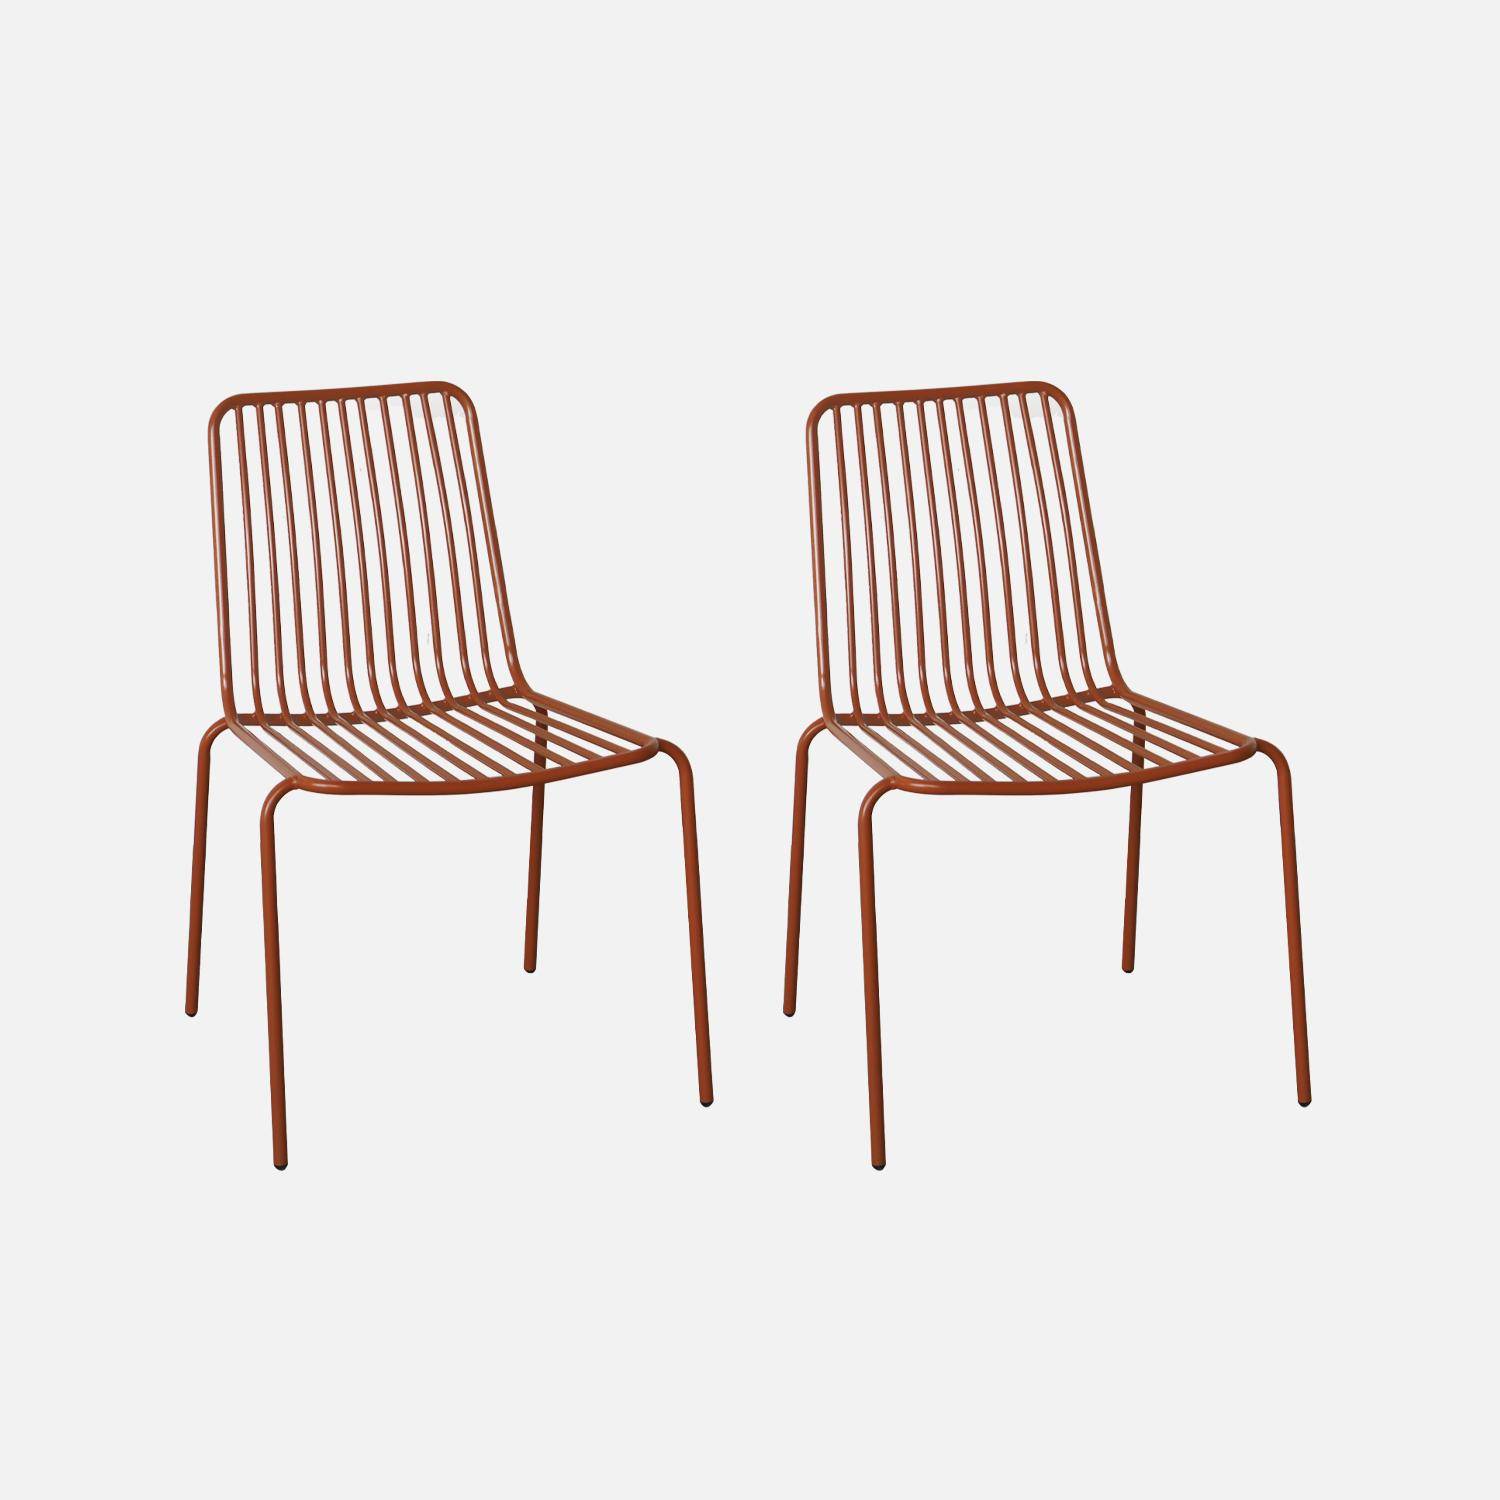 Lot de 2 chaises de jardin en acier terracotta , empilables, design linéaire ,sweeek,Photo1